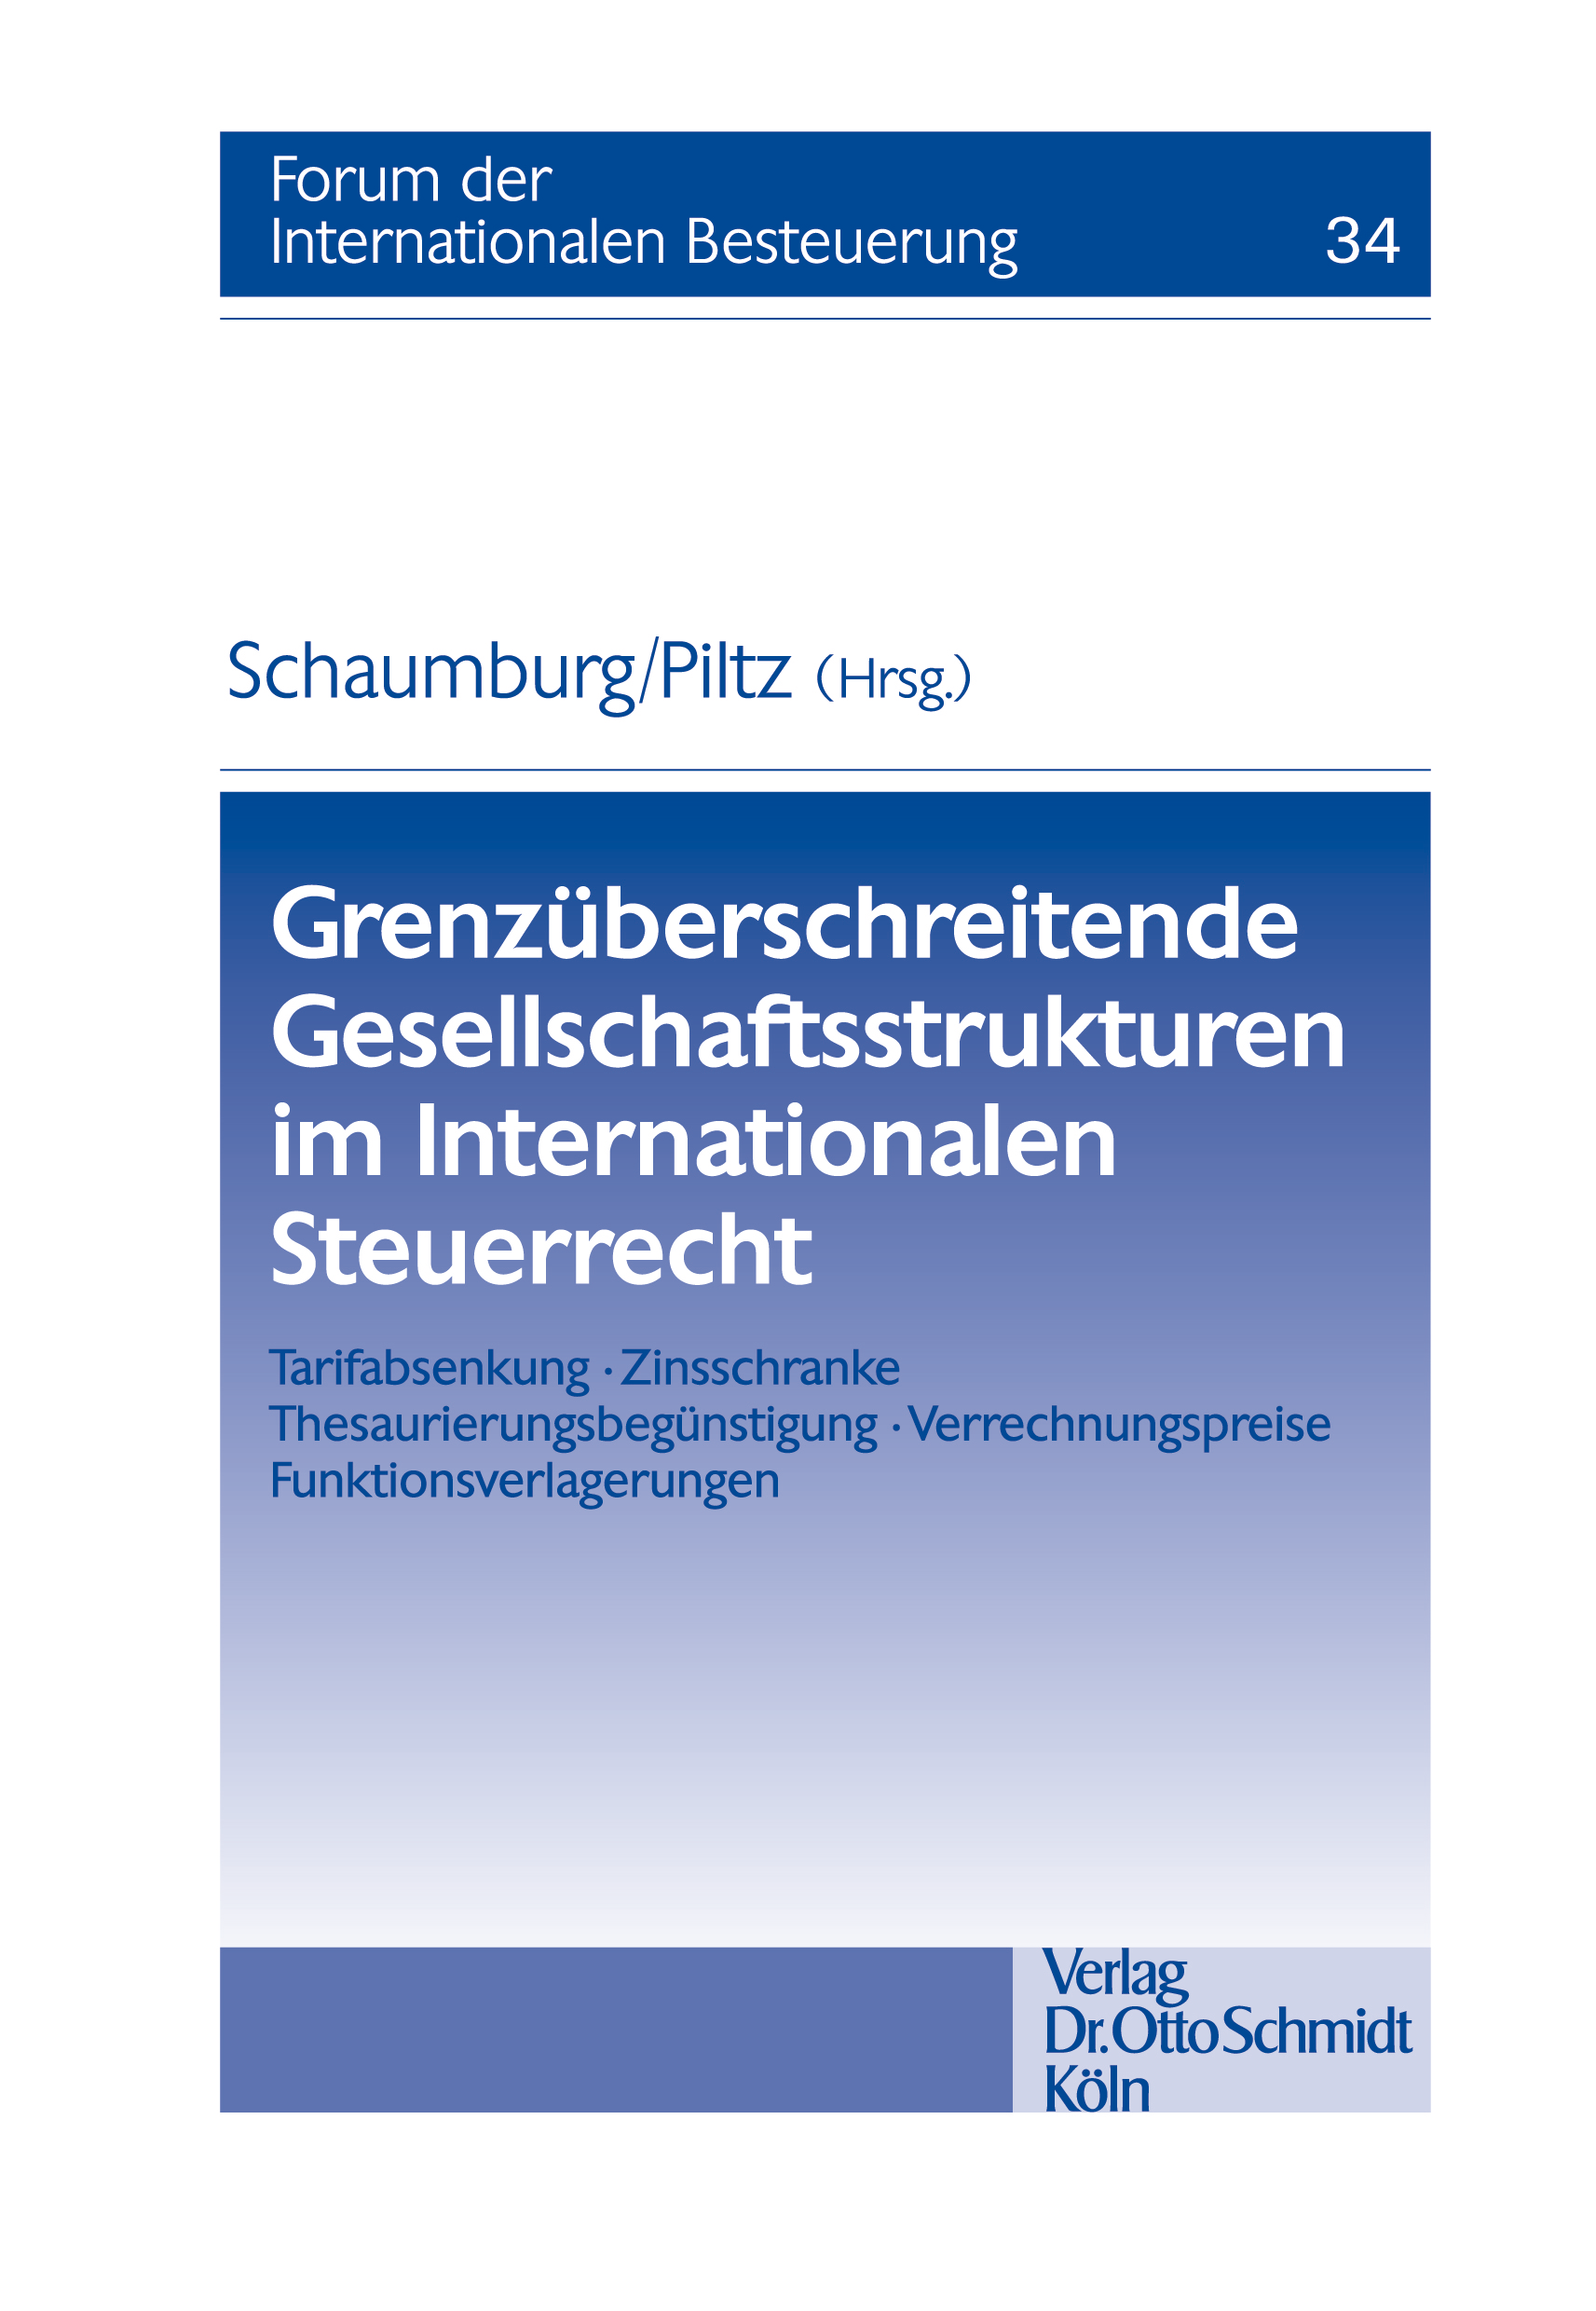 Abbildung: Grenzüberschreitende Gesellschaftsstrukturen im Internationalen Steuerrecht